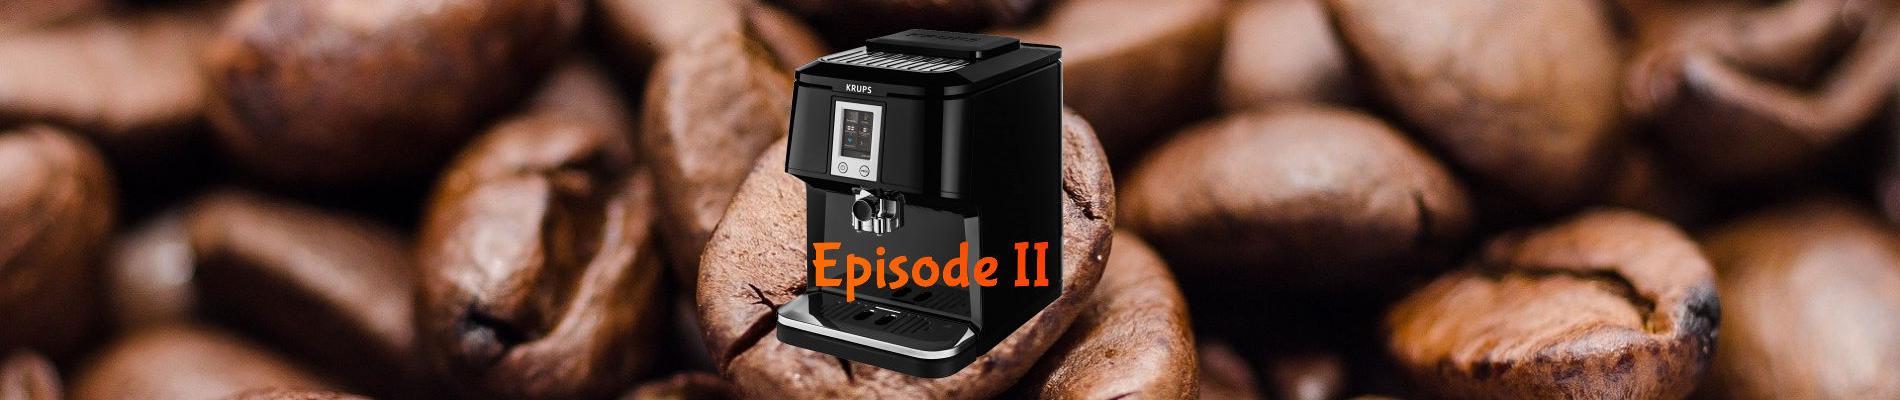 Machine à café automatique expresso Krups EA8800 - Épisode II